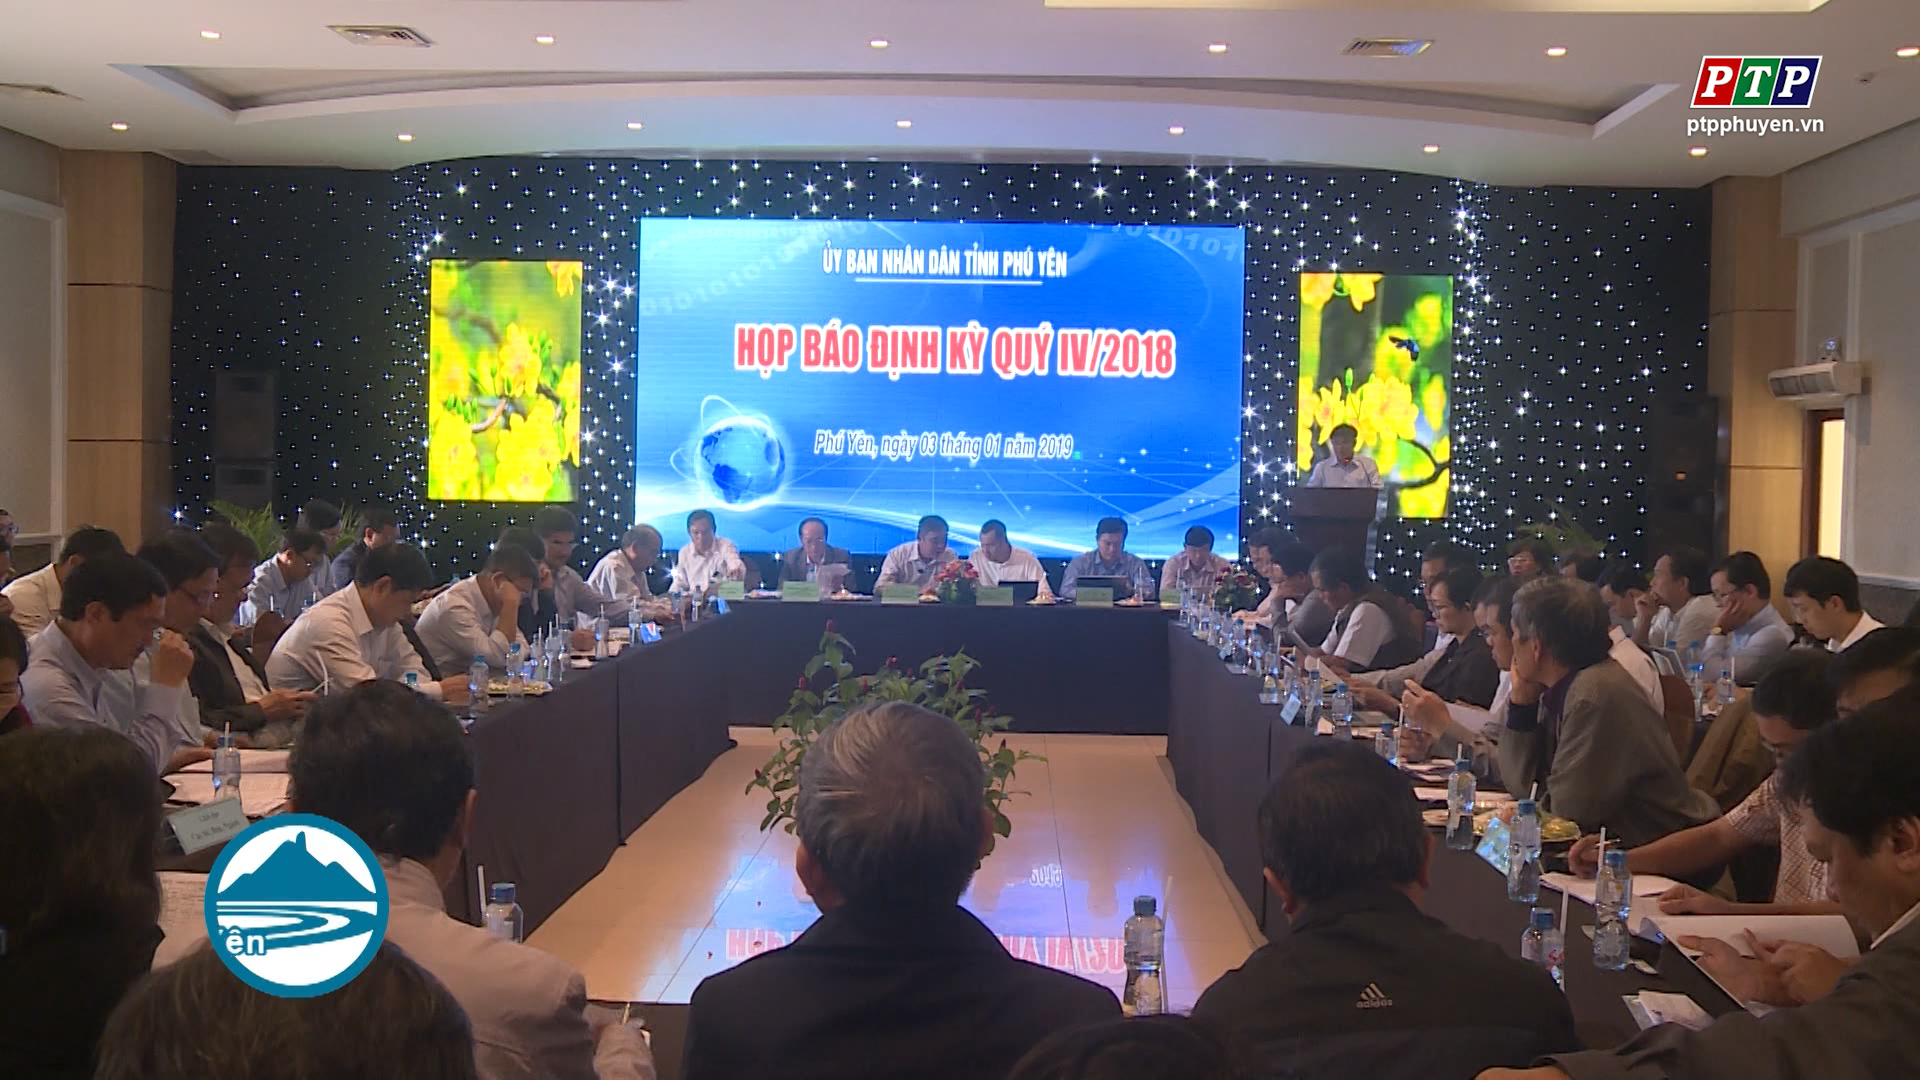  UBND tỉnh tổ chức họp báo định kỳ quý 4 năm 2018